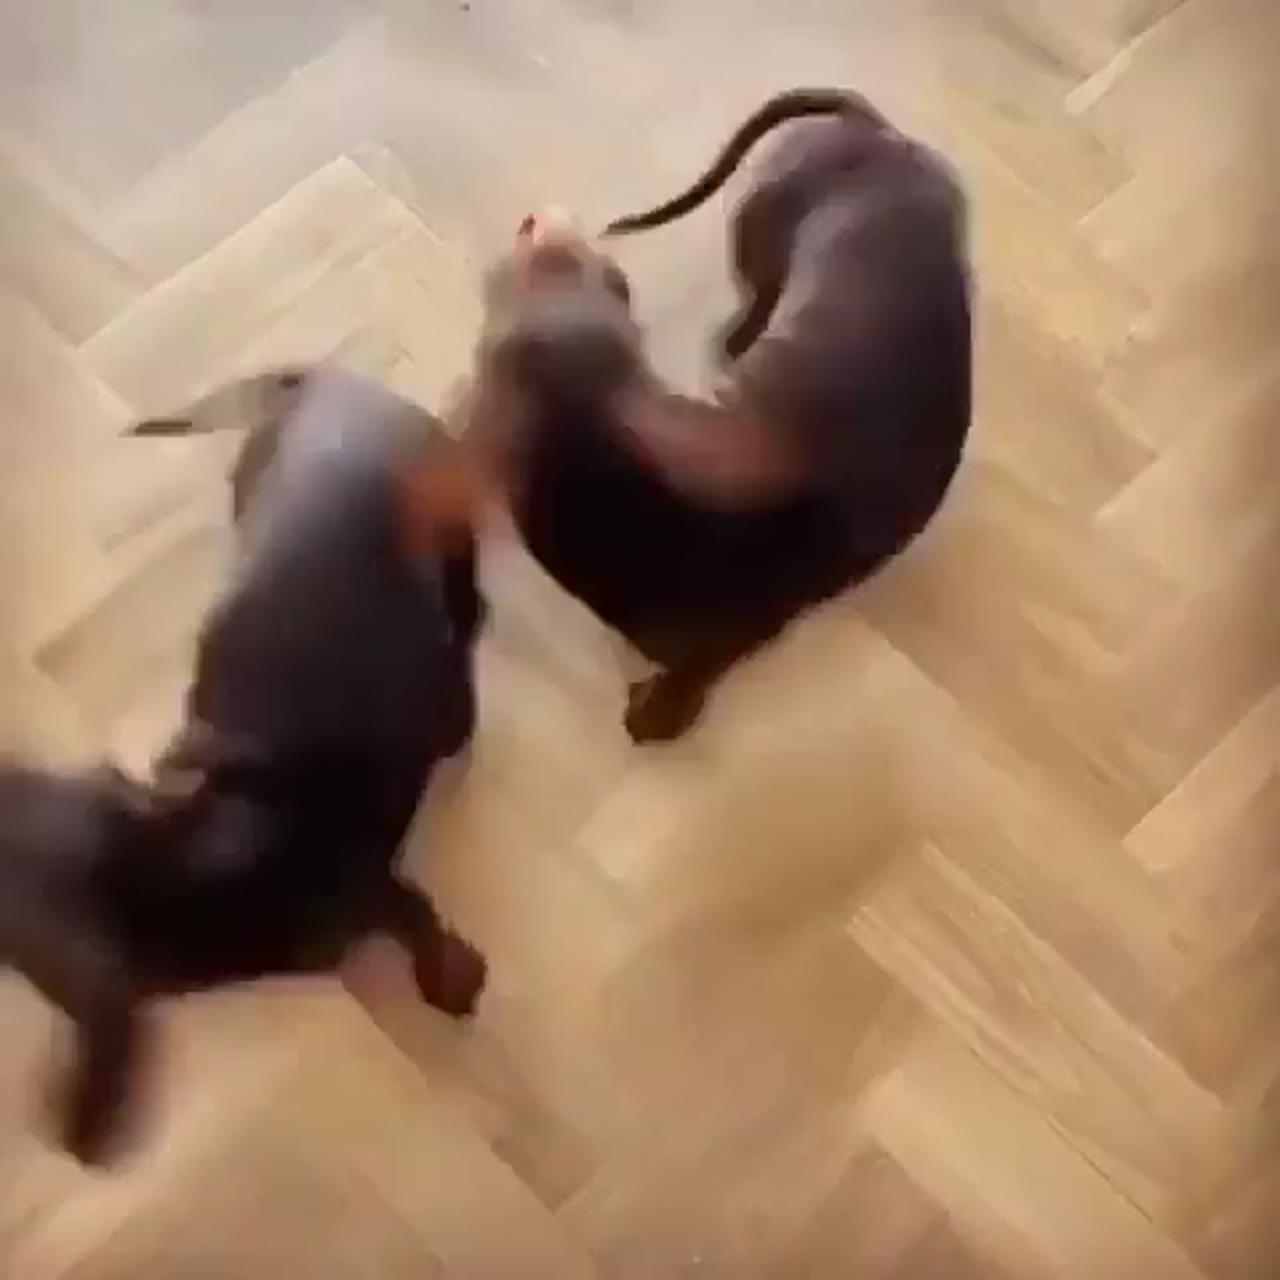 Dachshund videos; dachshund funny